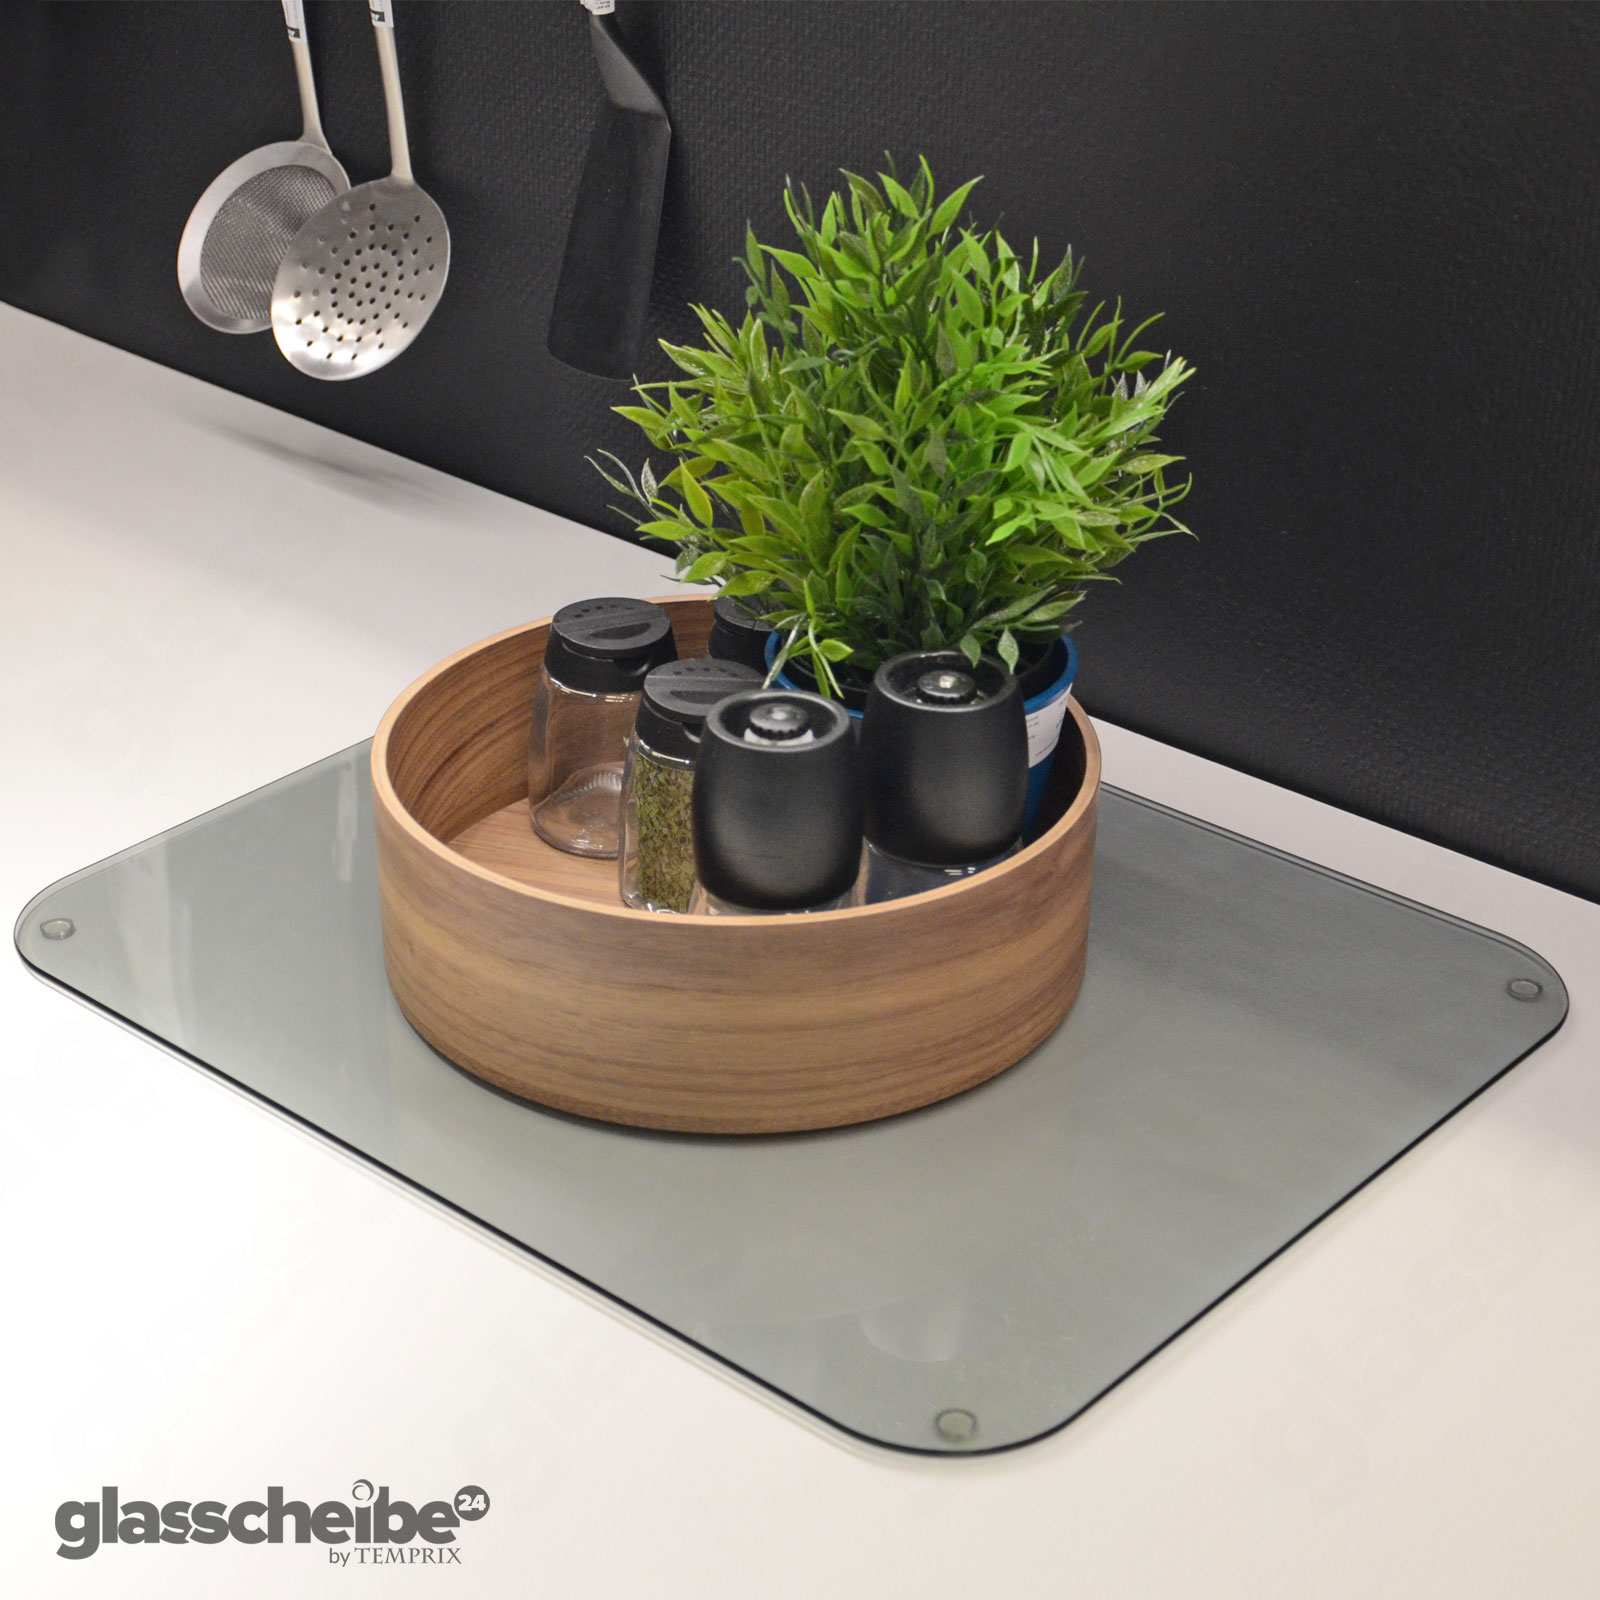 Platzteller aus Glas für verschiedenste Einsatzmöglichkeiten in Küche, Wohnzimmer und Arbeitszimmer.